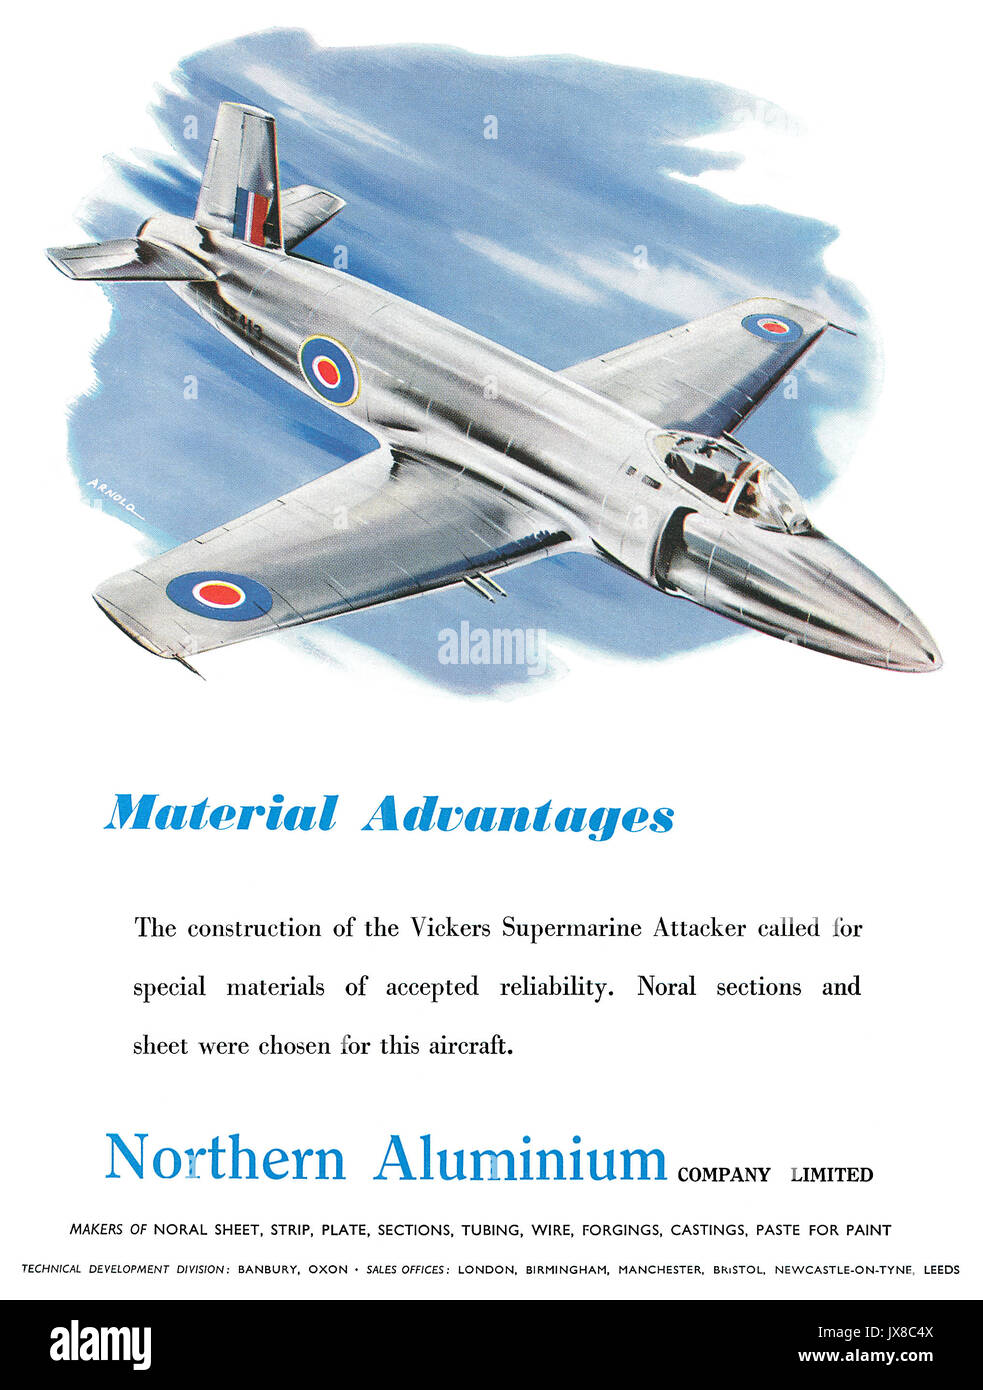 1950s British Werbung für Northern Aluminium, verfügt über eine Abbildung der Vickers Supermarine Angreifer jet Aircraft. Stockfoto